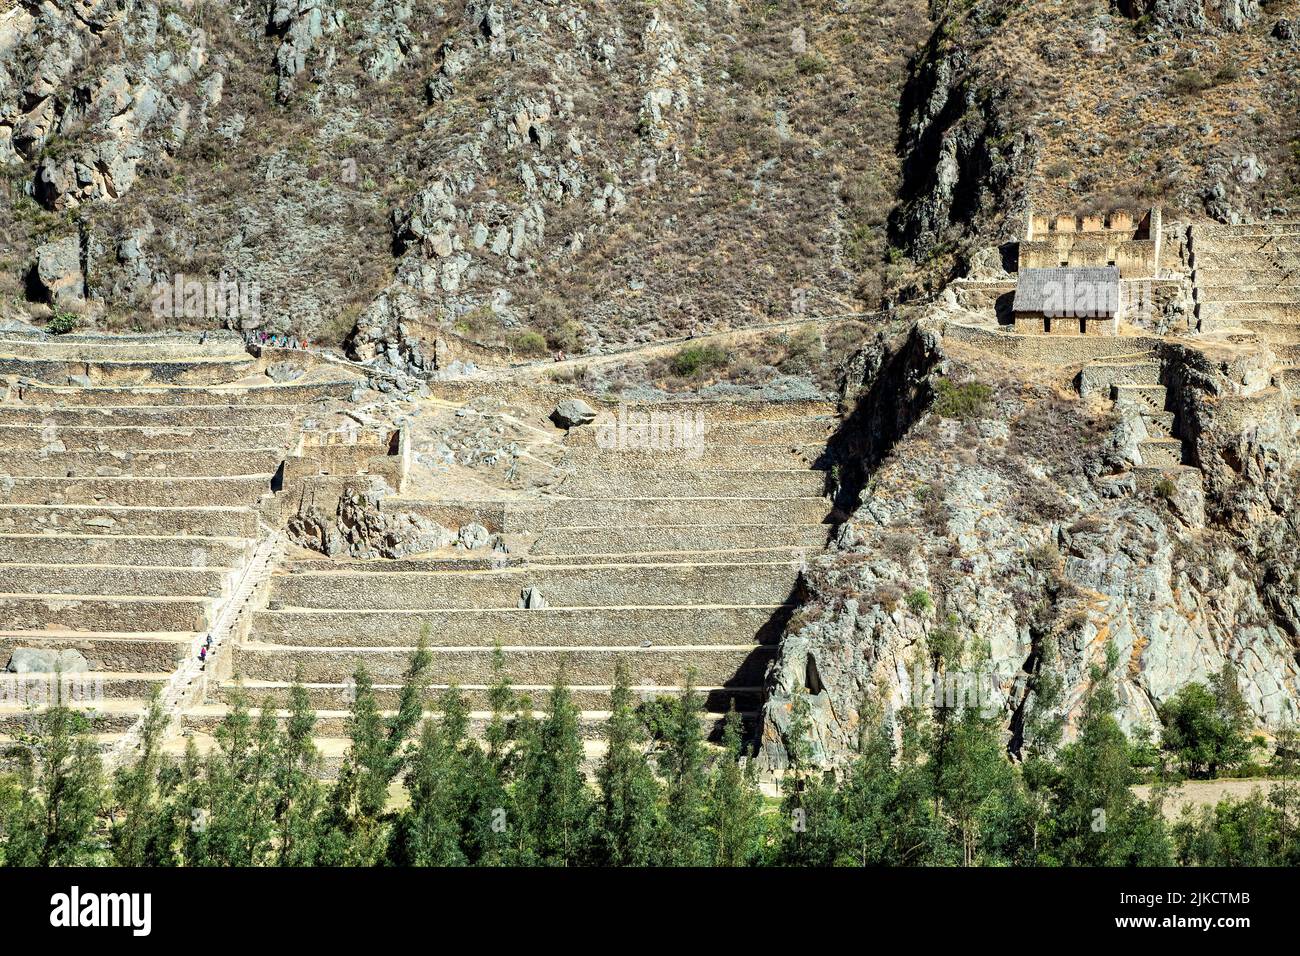 Almacenes y terrazas agrícolas, ruinas incas de Ollantaytambo, Ollantaytambo, Urubamba, Cusco, Perú Foto de stock